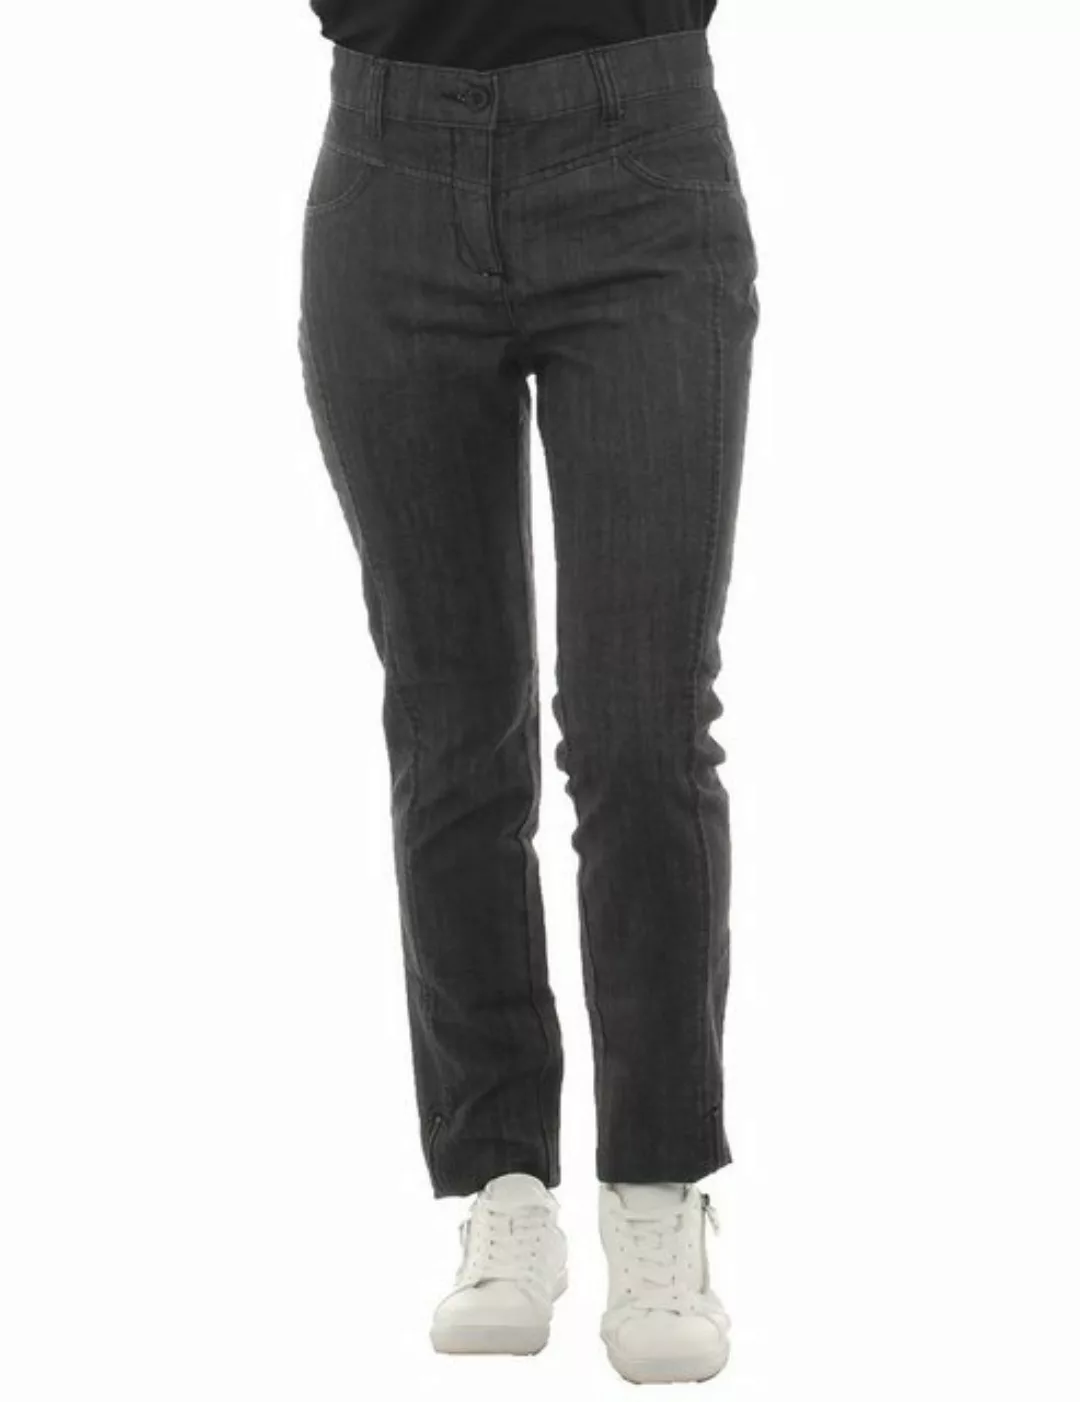 YESET Röhrenhose Damen Röhrenhose Jeans Hose black denim 099607 günstig online kaufen